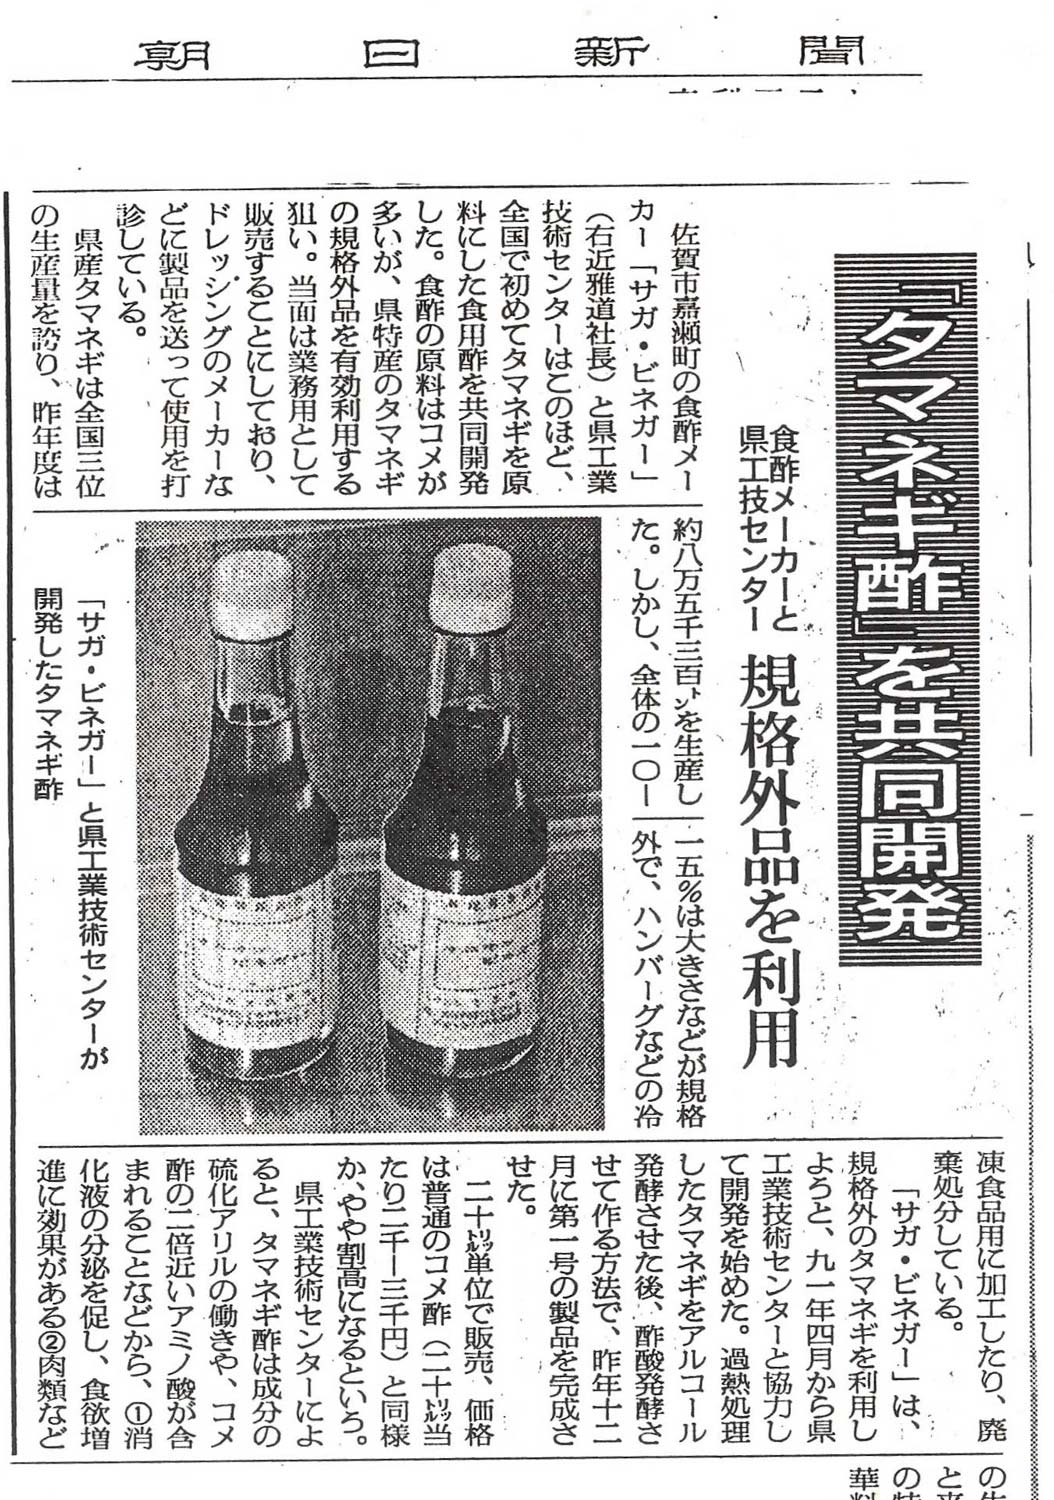 新聞掲載　1993年(平成5年)1月21日　朝日新聞　「タマネギ酢を共同開発」